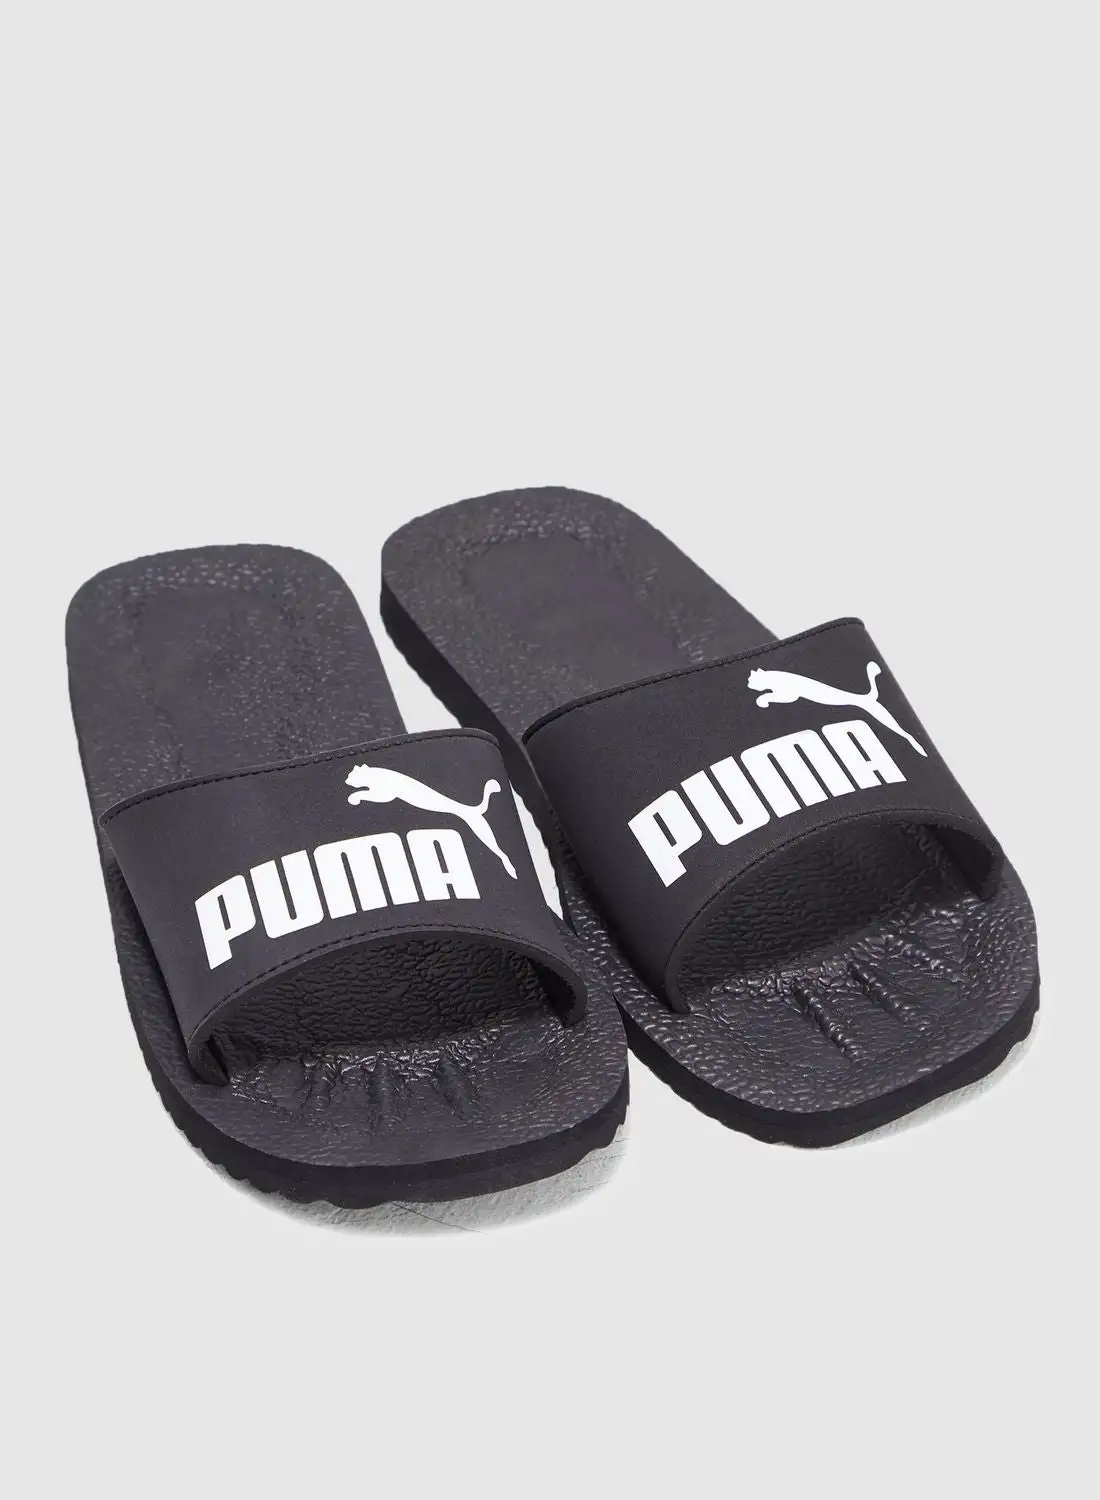 PUMA Purecat men sandals